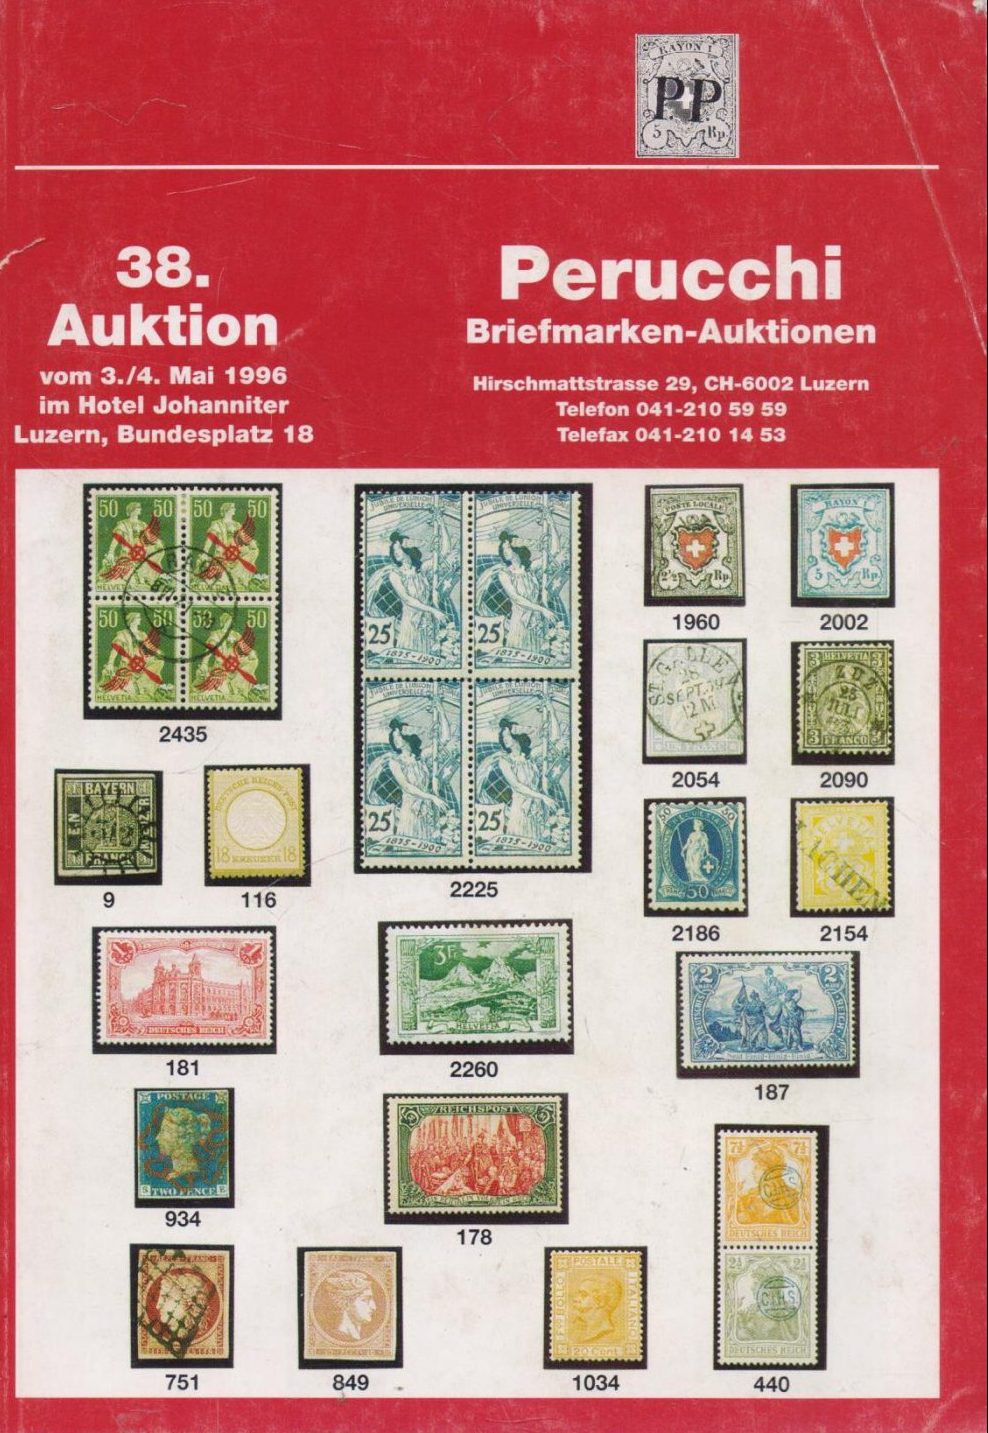 Perucchi Briefmarken-Auktionen G.A.